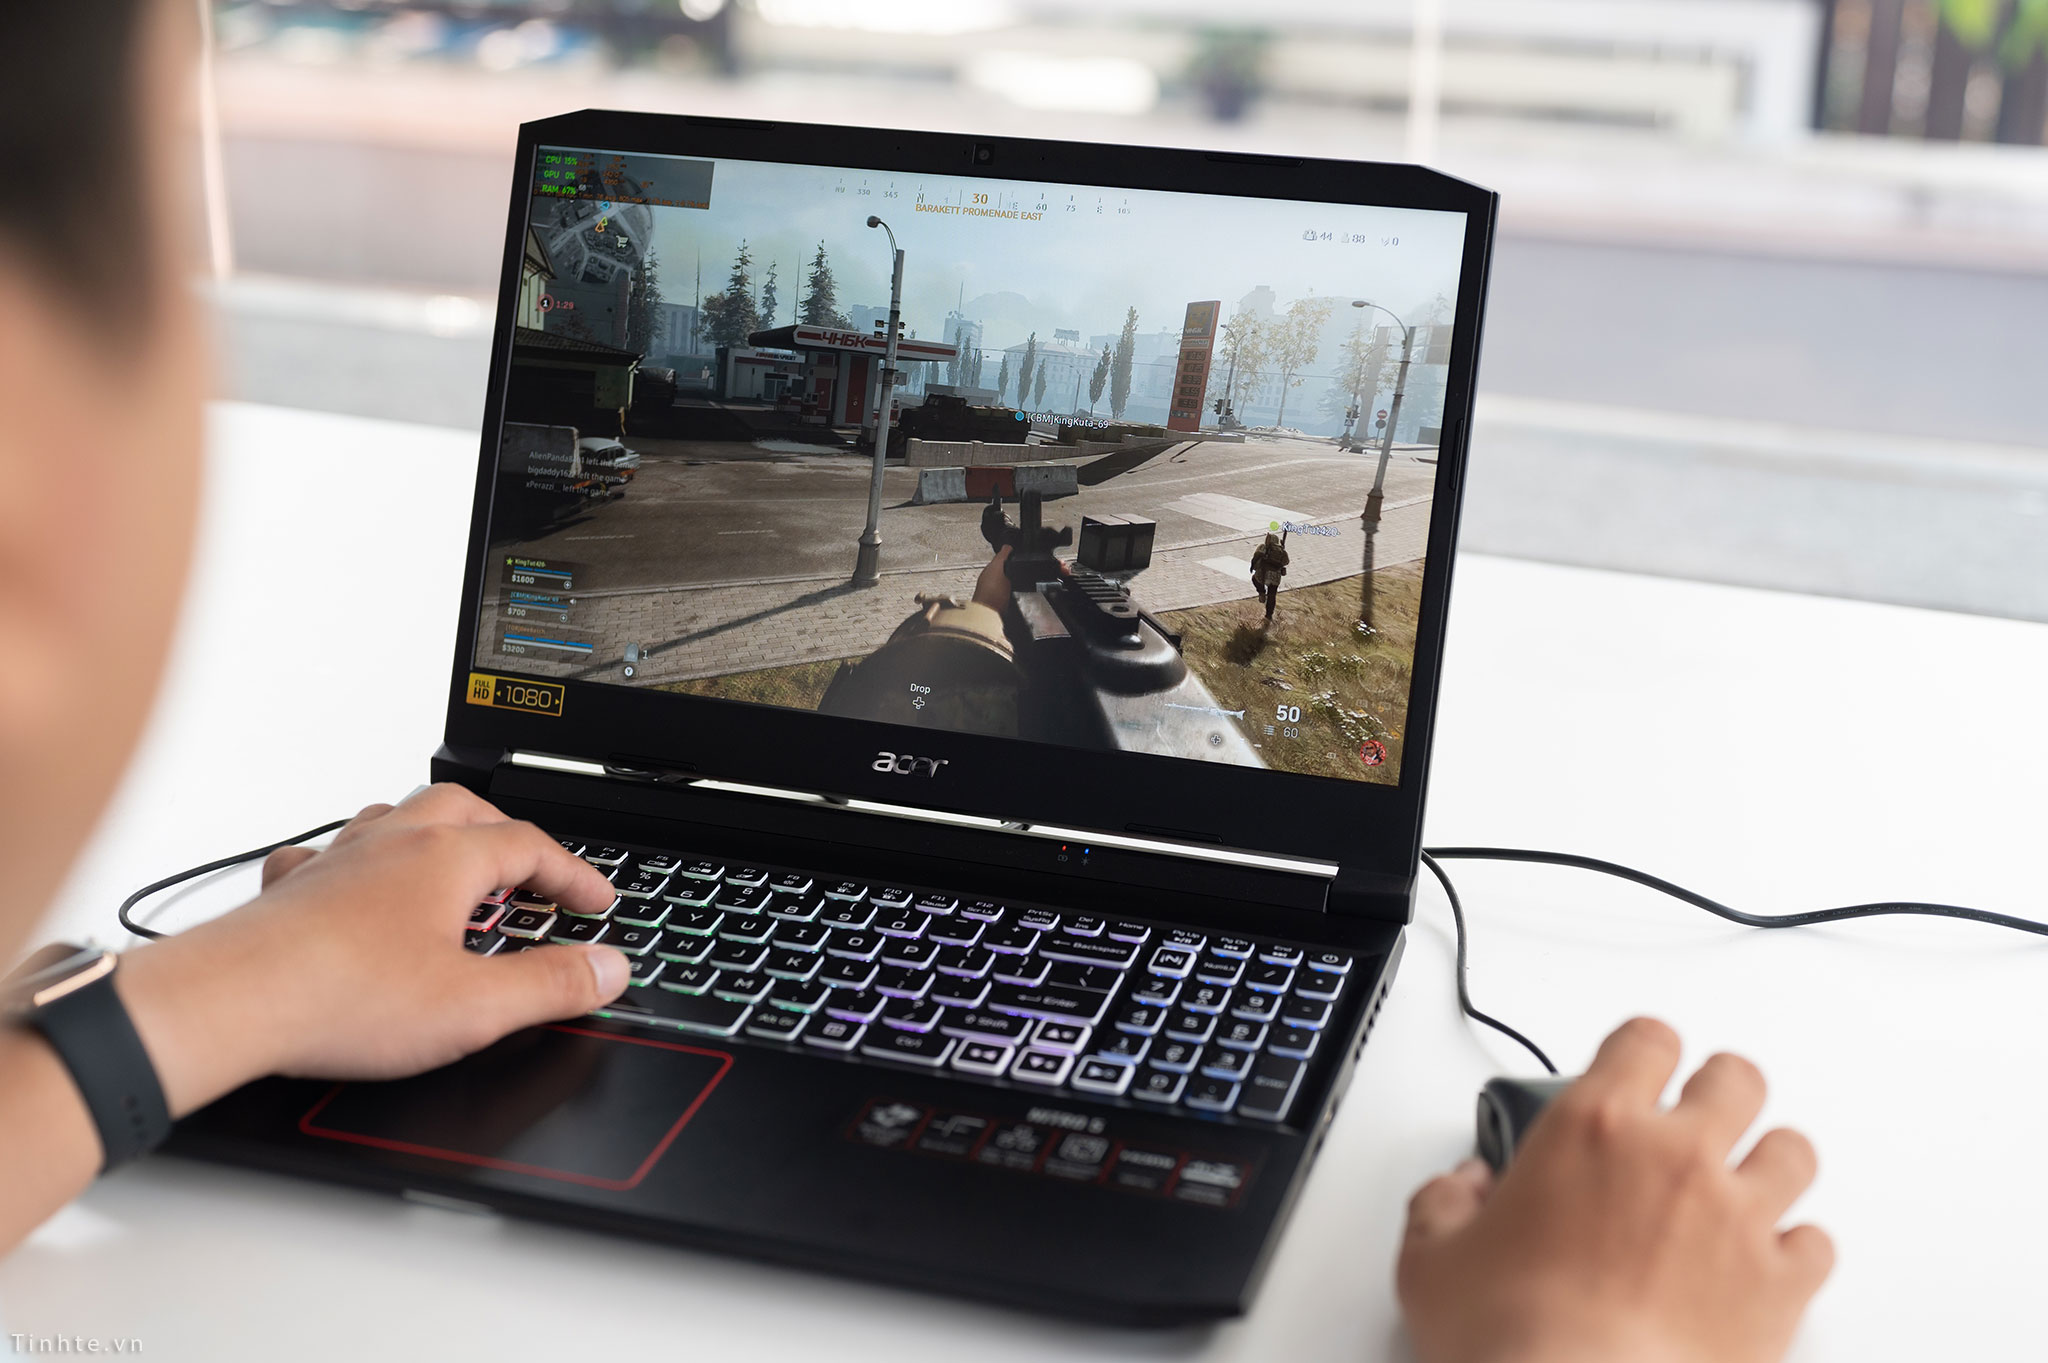 Laptop Acer Nitro 5 2020 - Cỗ máy chiến game đáng sở hữu nhất thời điểm hiện tại!